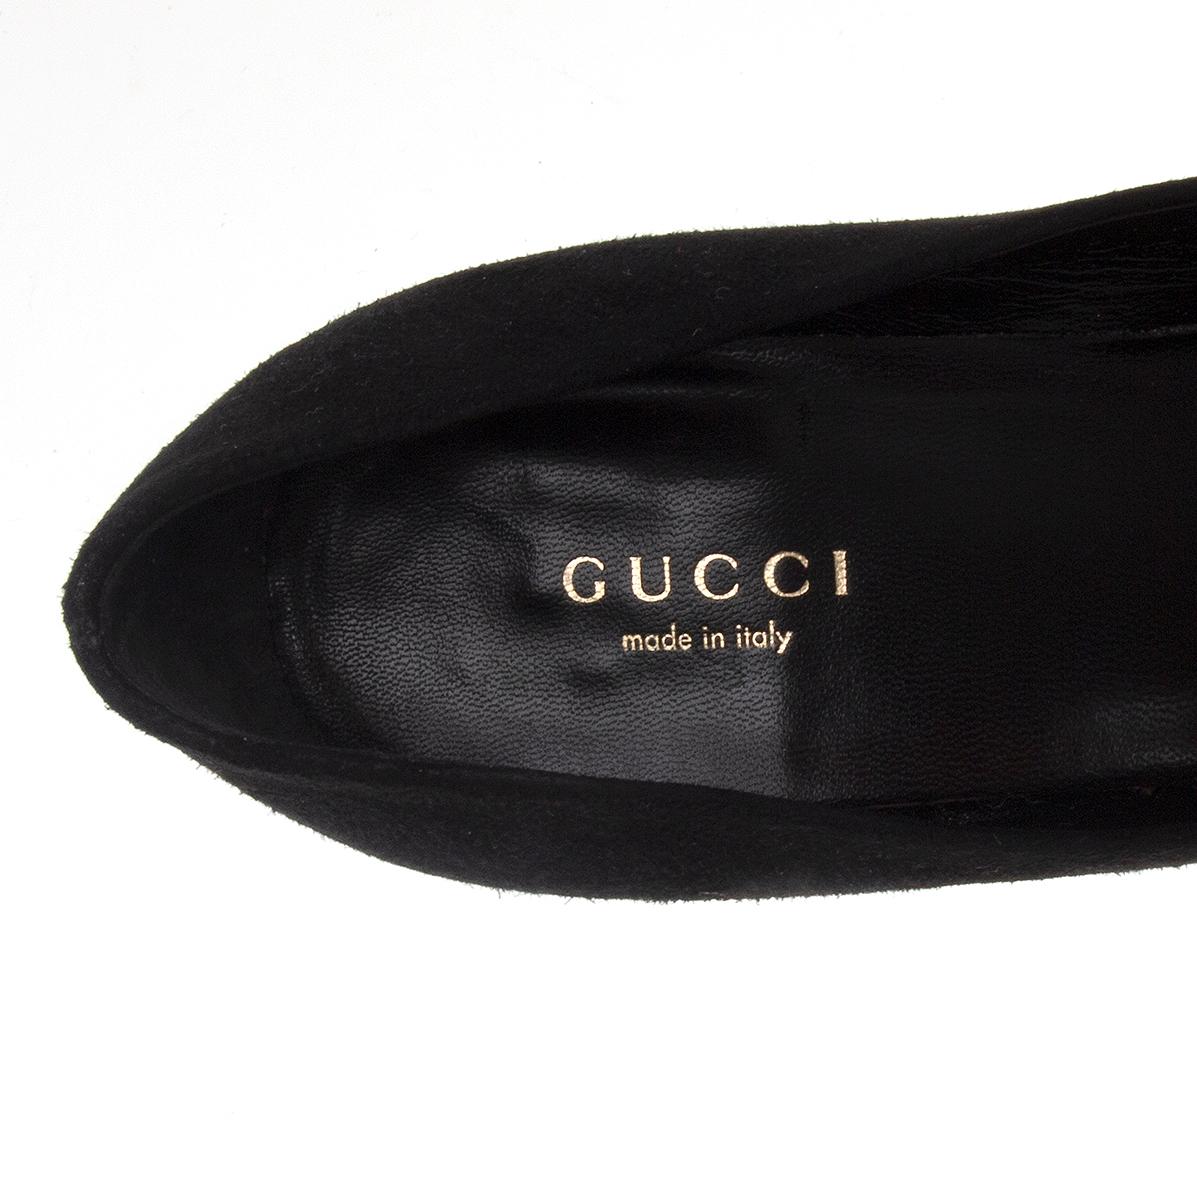 GUCCI black suede Platform Pumps Shoes 35.5 2